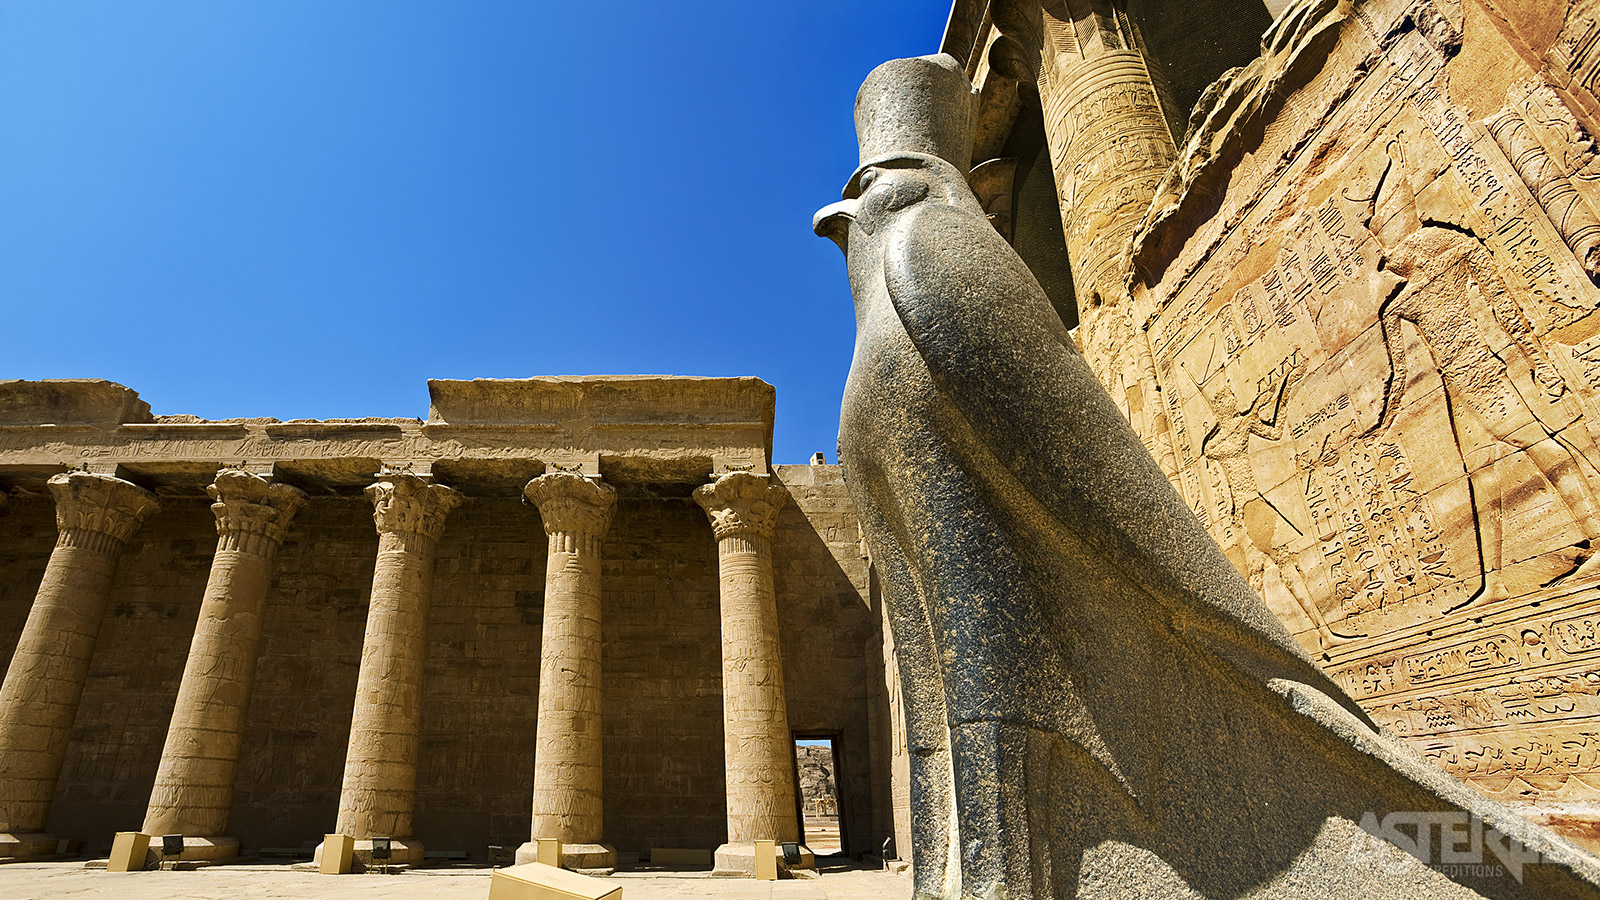 De tempel van Horus in Edfu is gewijd aan de valkengod Horus, beschermer van de farao's